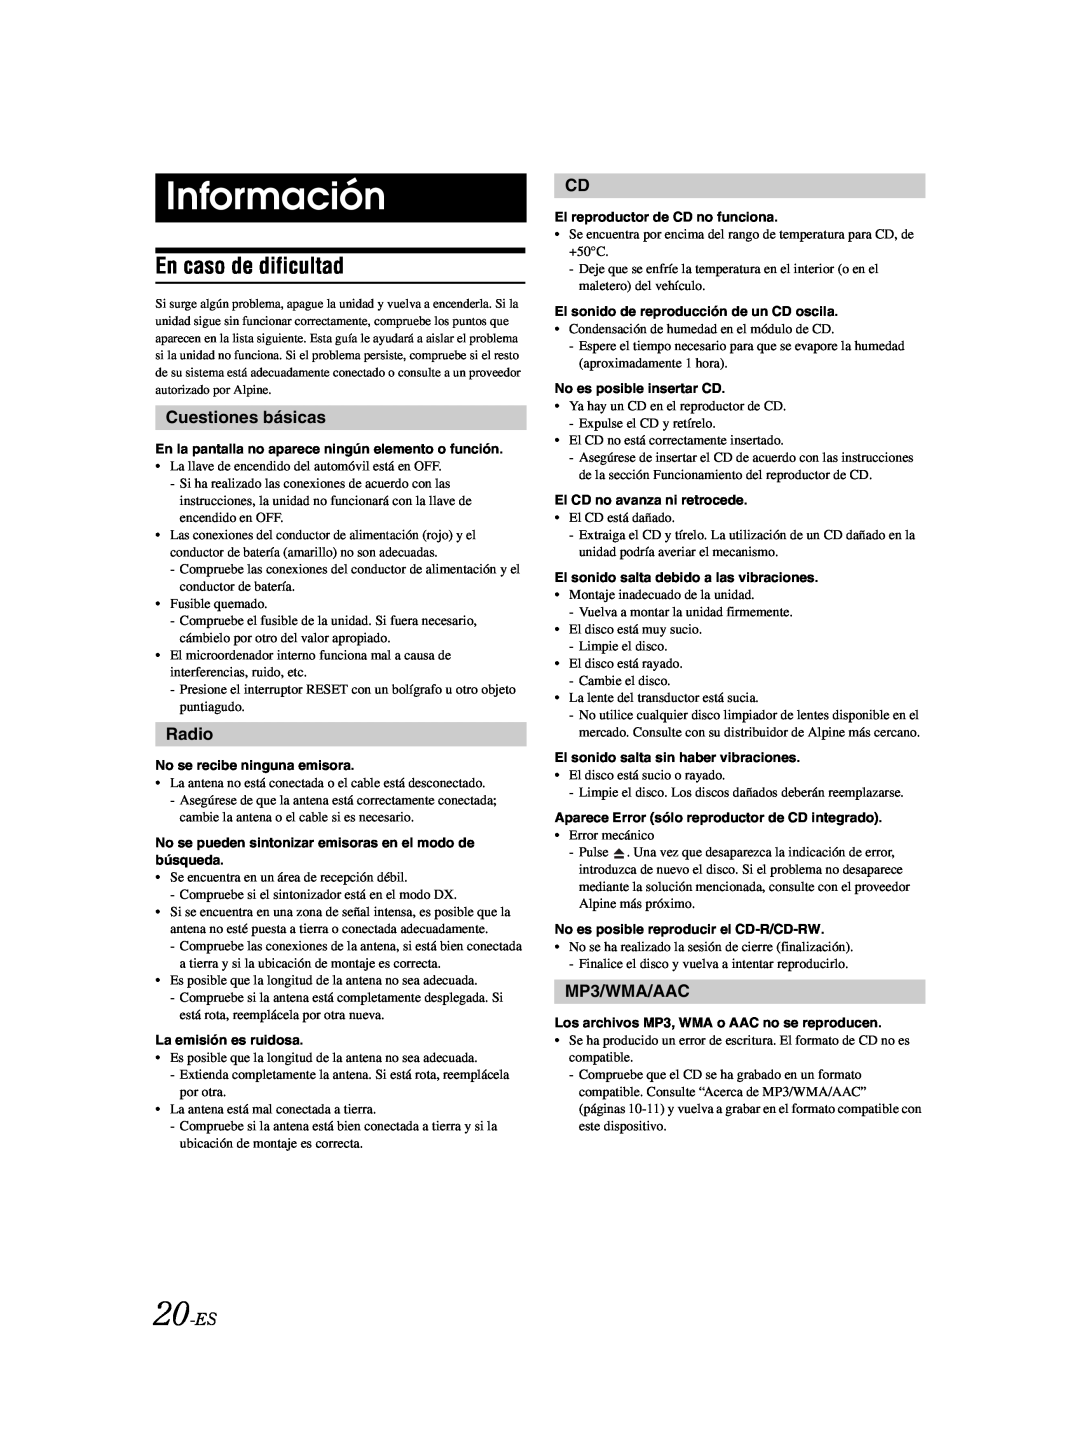 Alpine CDE-9873 owner manual Información, En caso de dificultad, Cuestiones básicas, 20-ES, Radio, MP3/WMA/AAC 